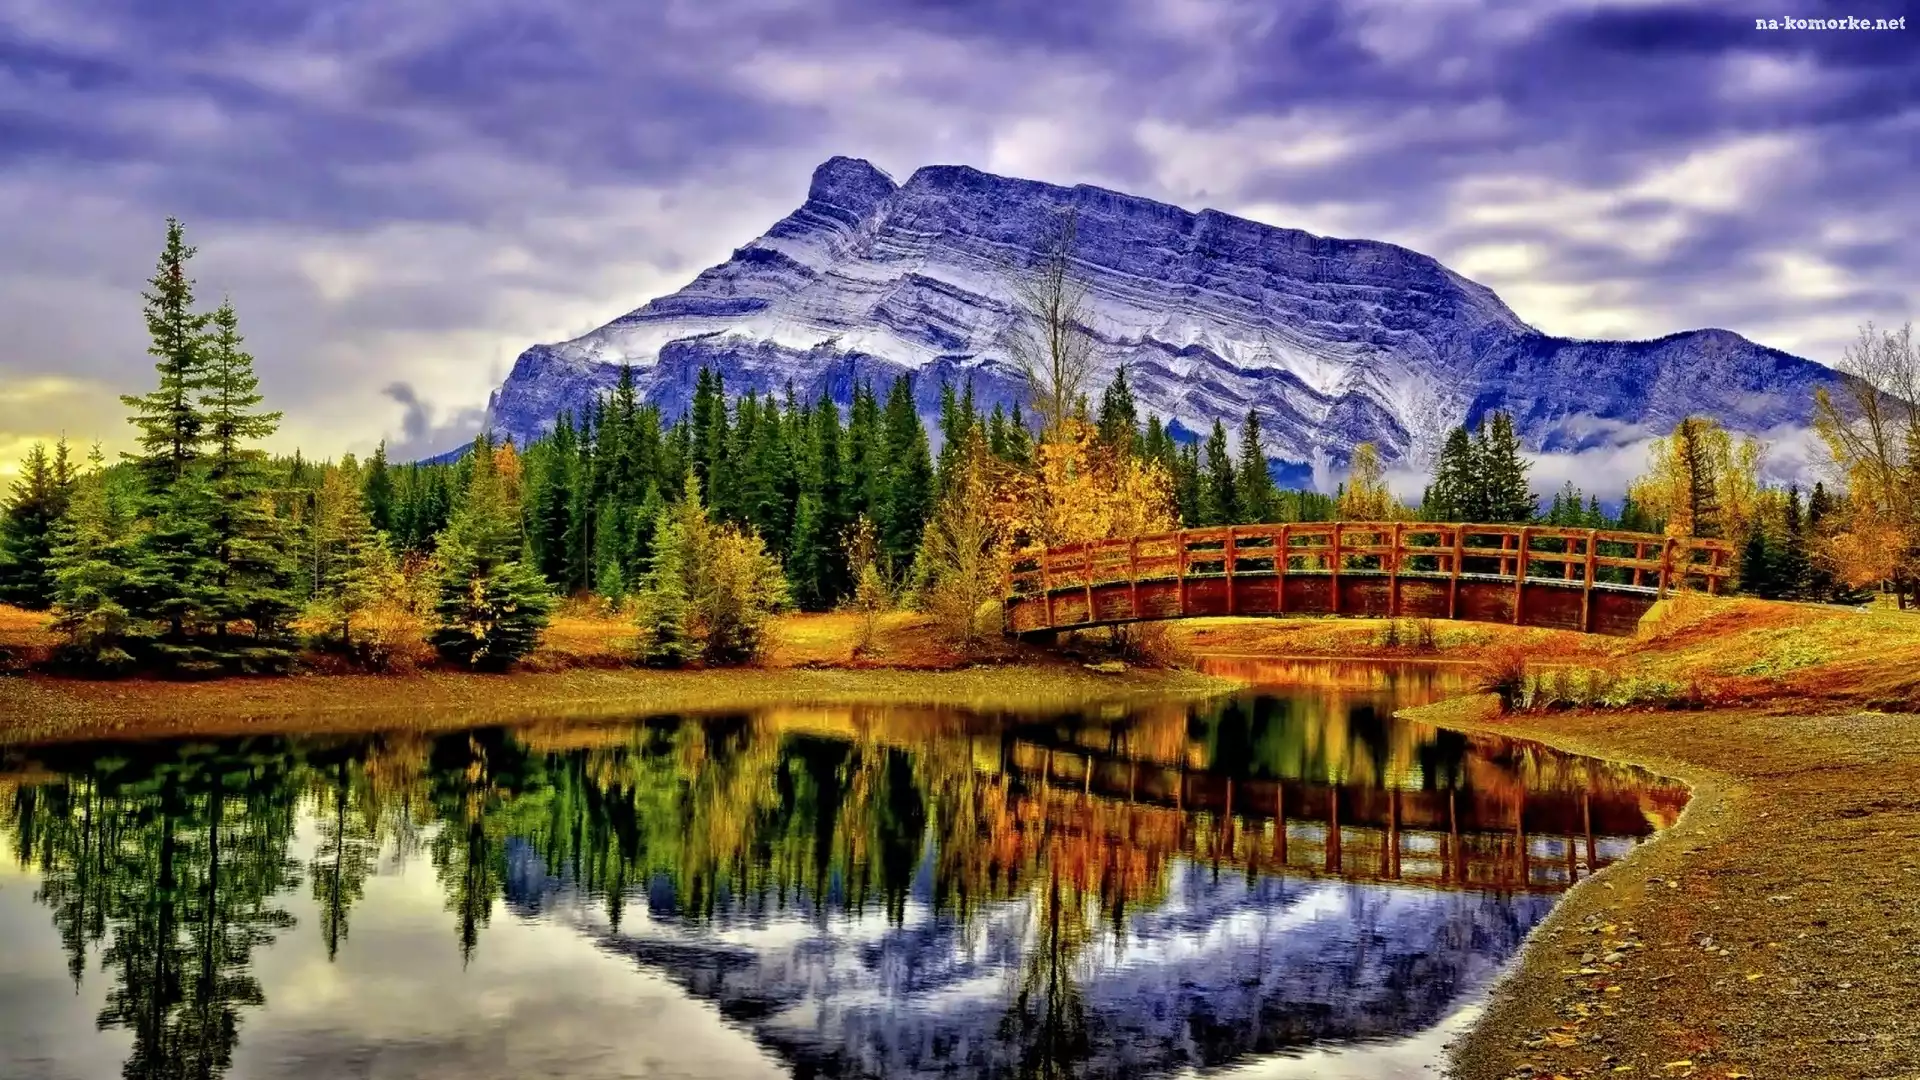 Park Narodowy Banff, Kanada, Lasy, Góry, Jesień, Prowincja Alberta, Most, Szczyt Mount Rundle, Jezioro Vermilion Lakes